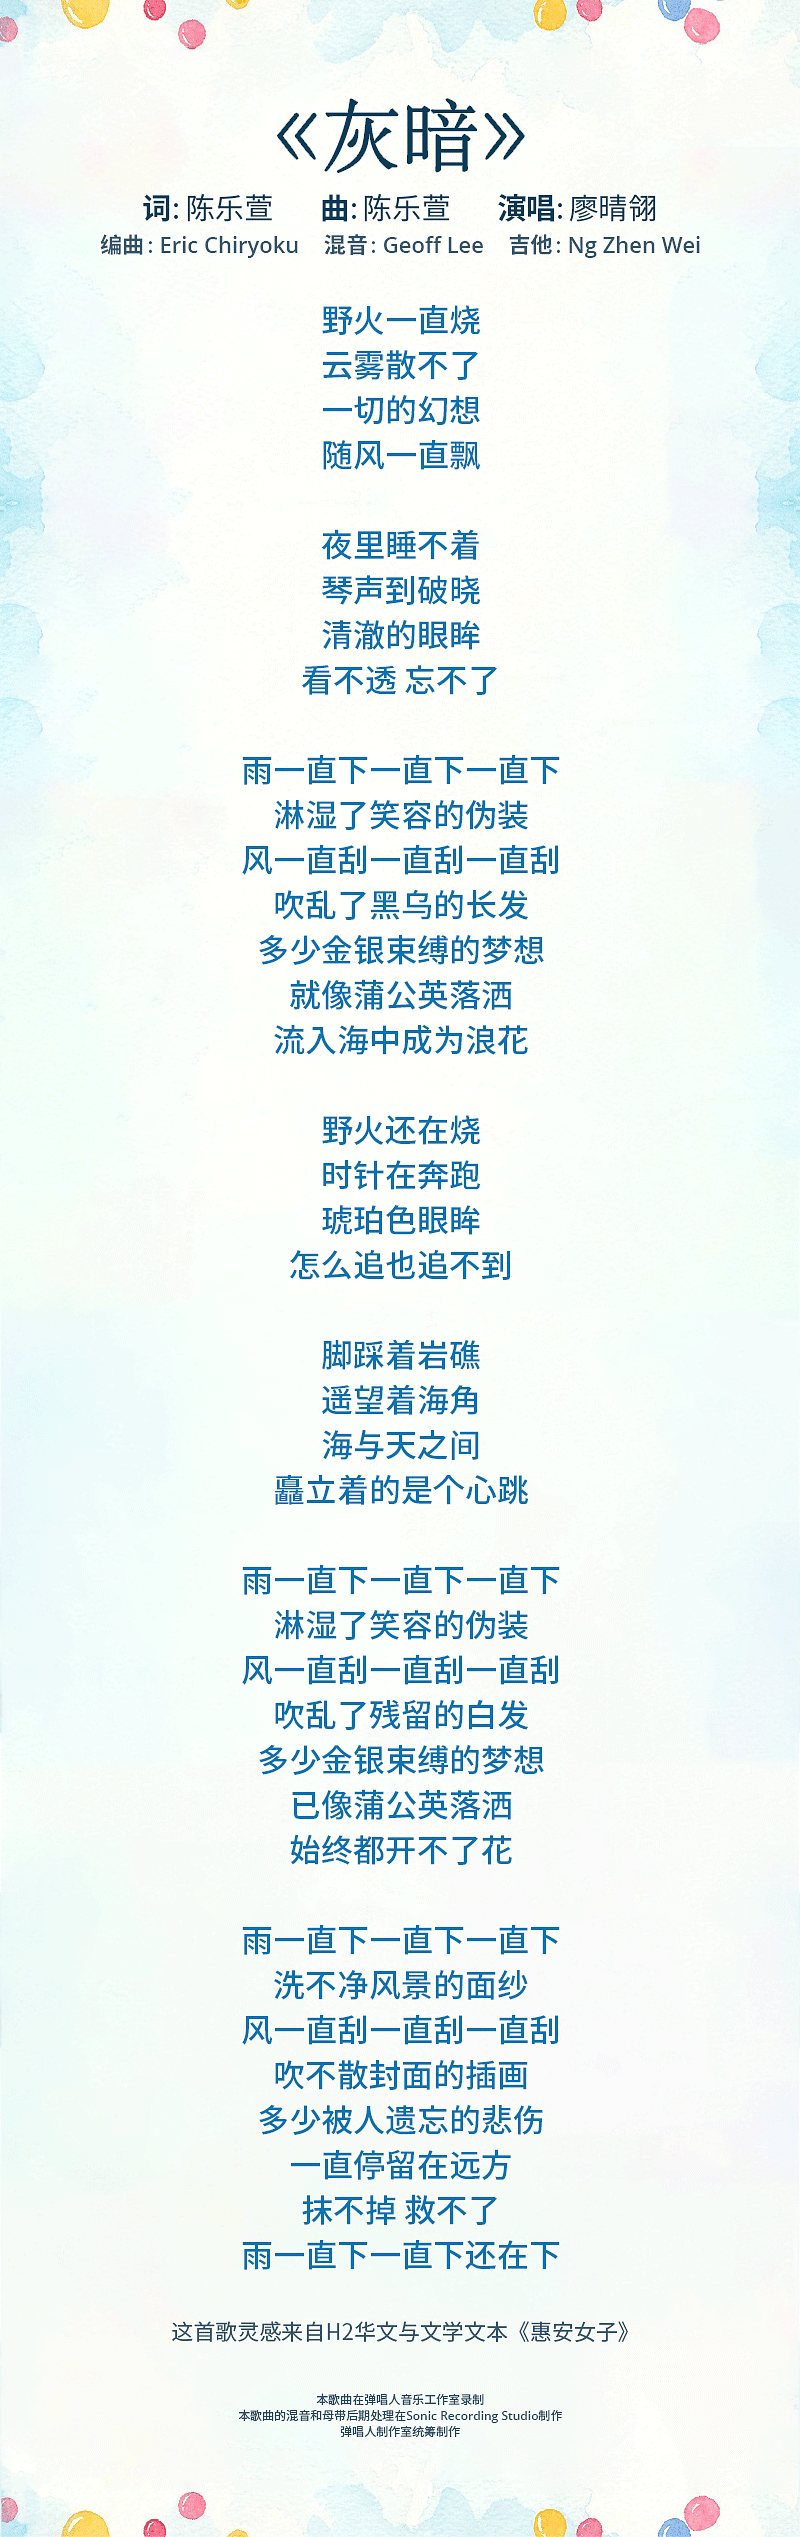 hui-an-lyrics-mobile.png